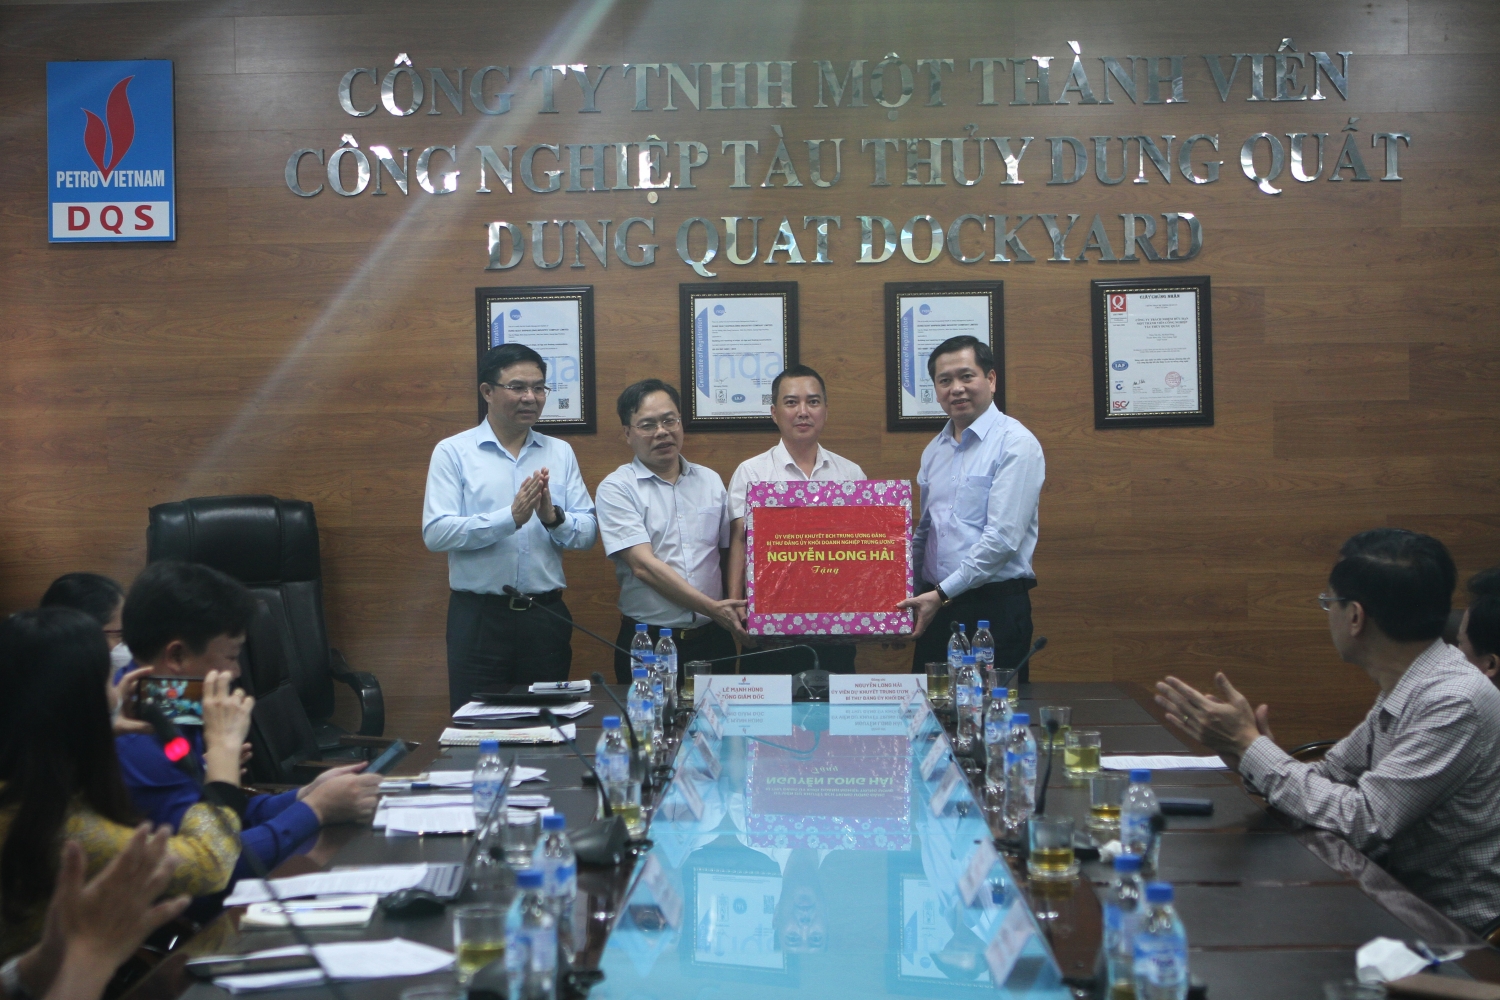 Đồng chí Nguyễn Long Hải - Bí thư Đảng uỷ Khối DNTW tặng quà động viên người lao động DQS.